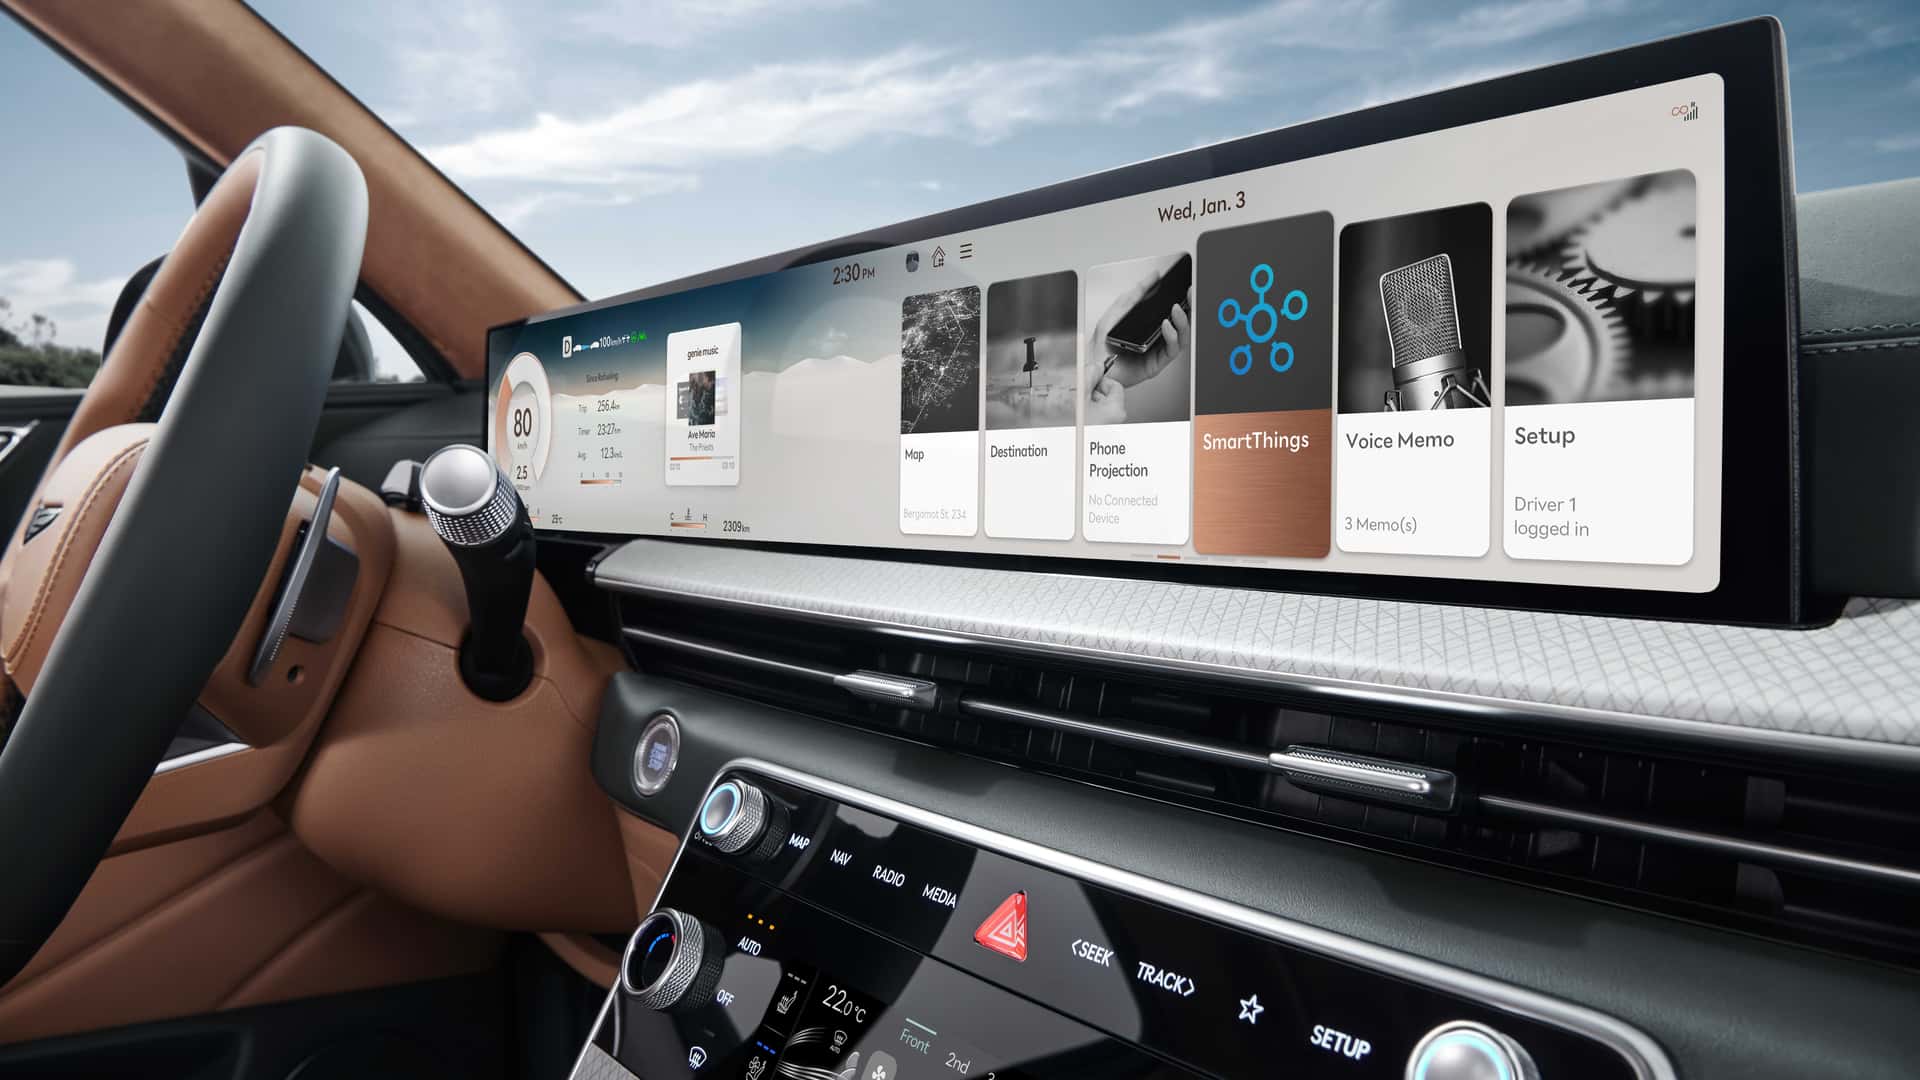  Plataforma da Samsung que pode controlar carros via smartphone